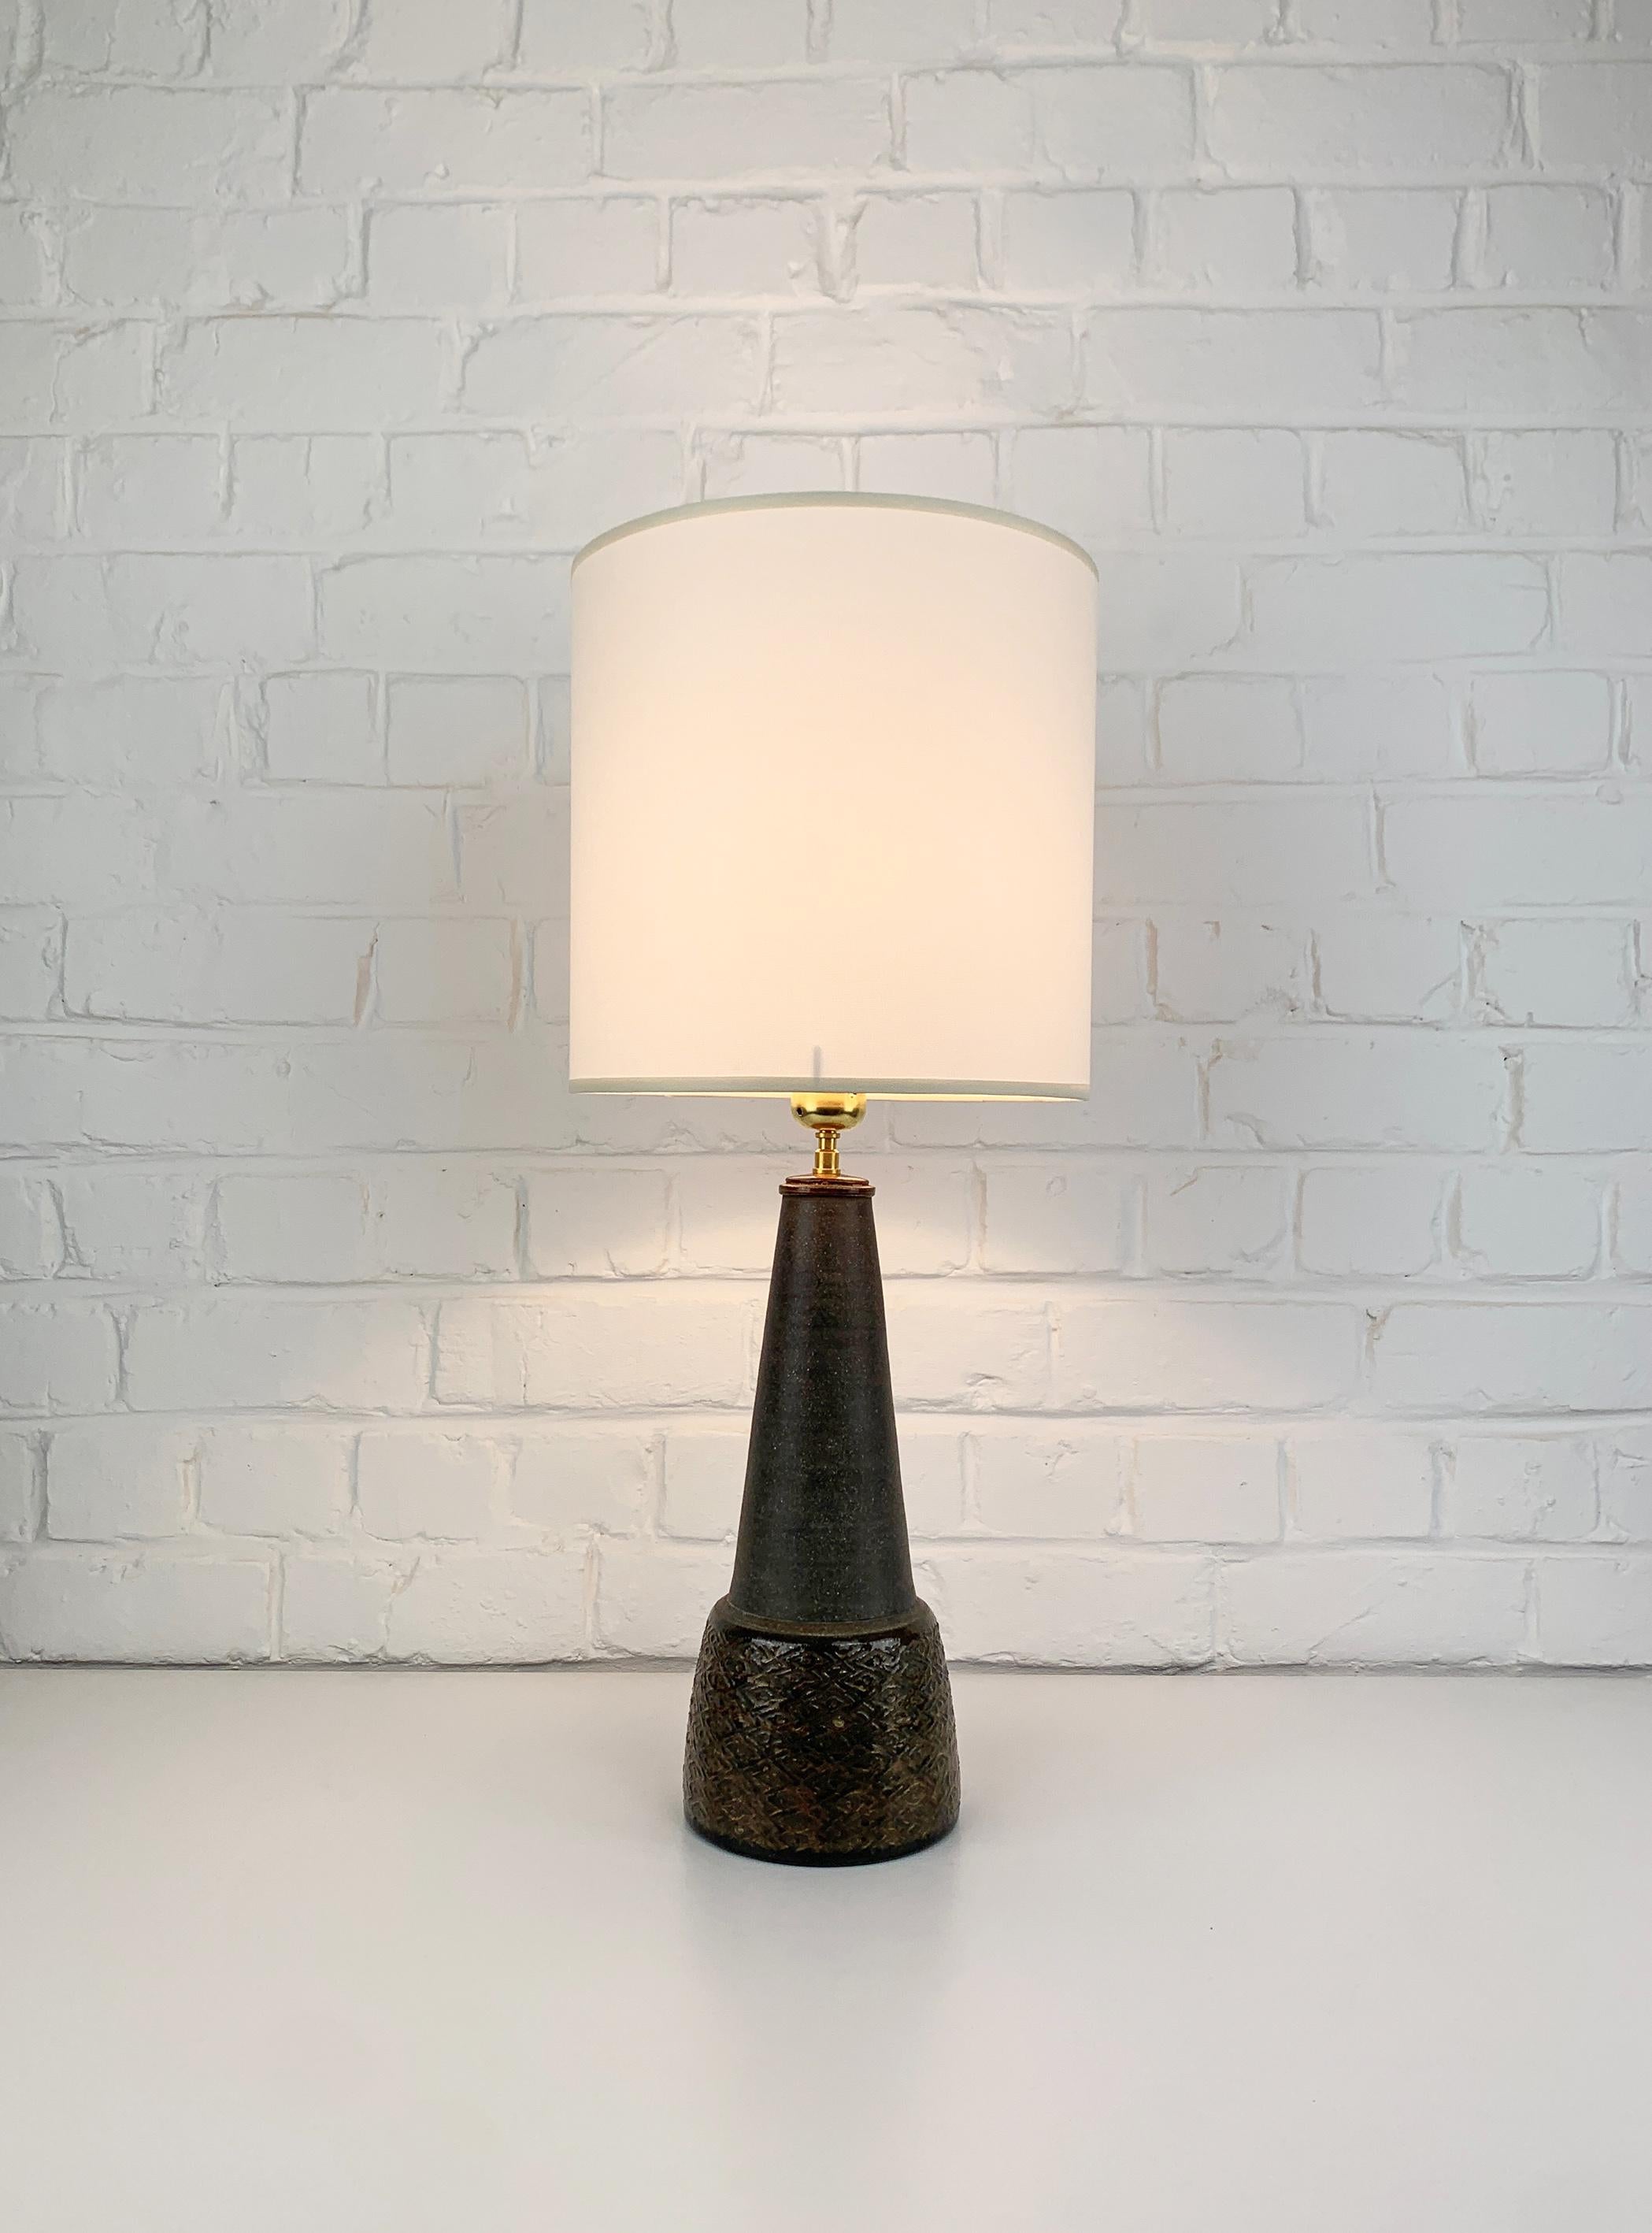 20th Century Danish Modernist Ceramic Table Lamp, Stoneware, Nils Kähler for HAK Denmark 1960